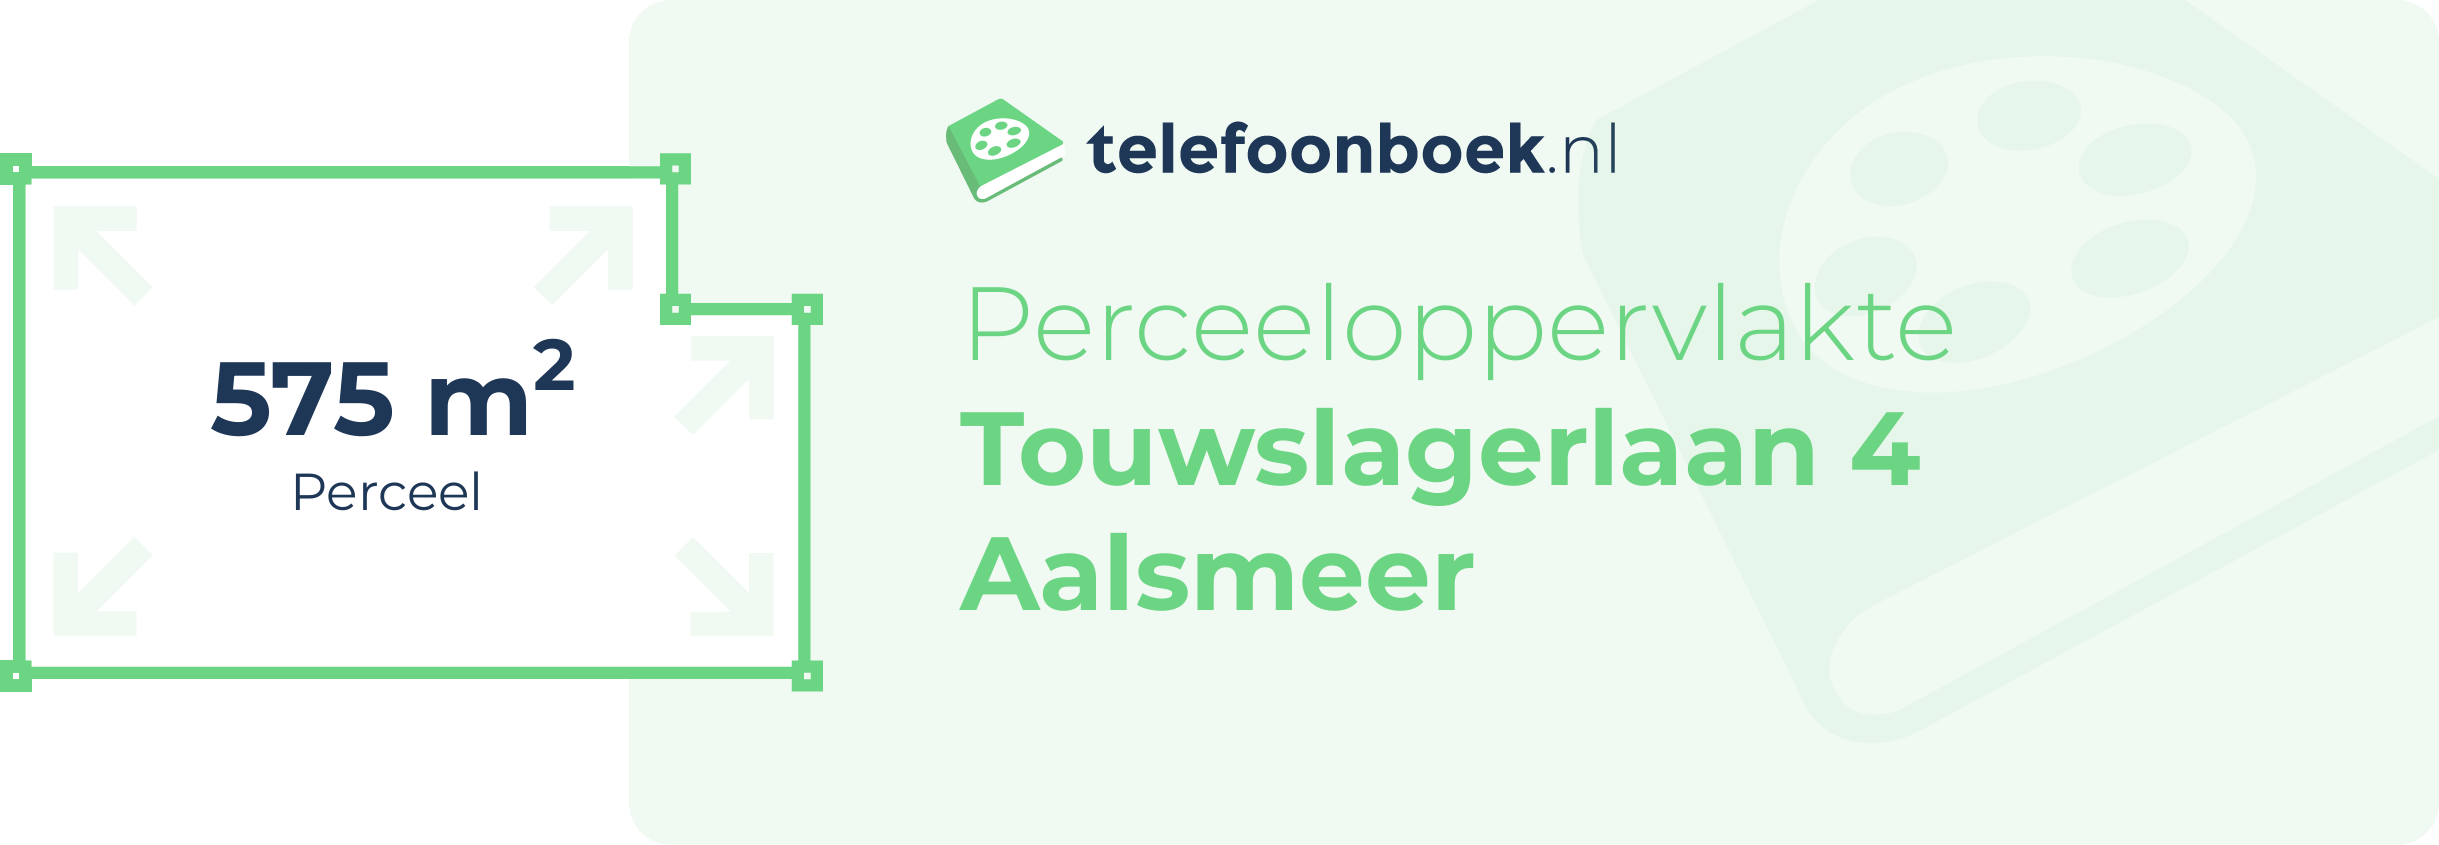 Perceeloppervlakte Touwslagerlaan 4 Aalsmeer